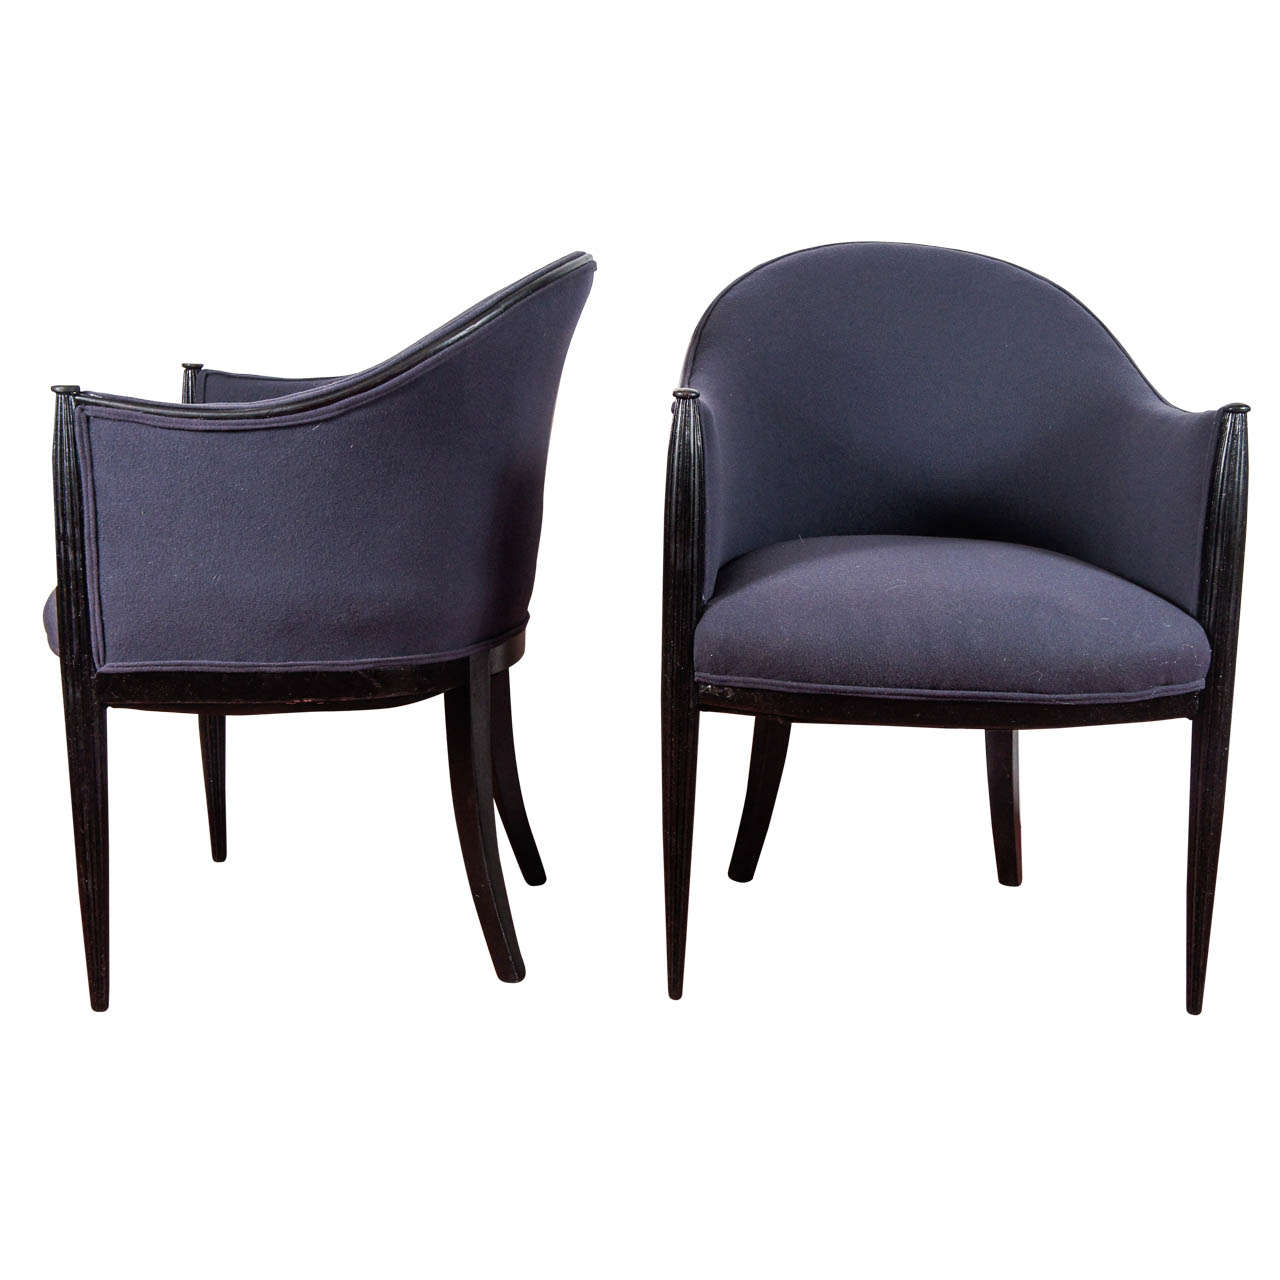 Six Rhulmann or Paul Follot Style Chairs, Priced Per Pair